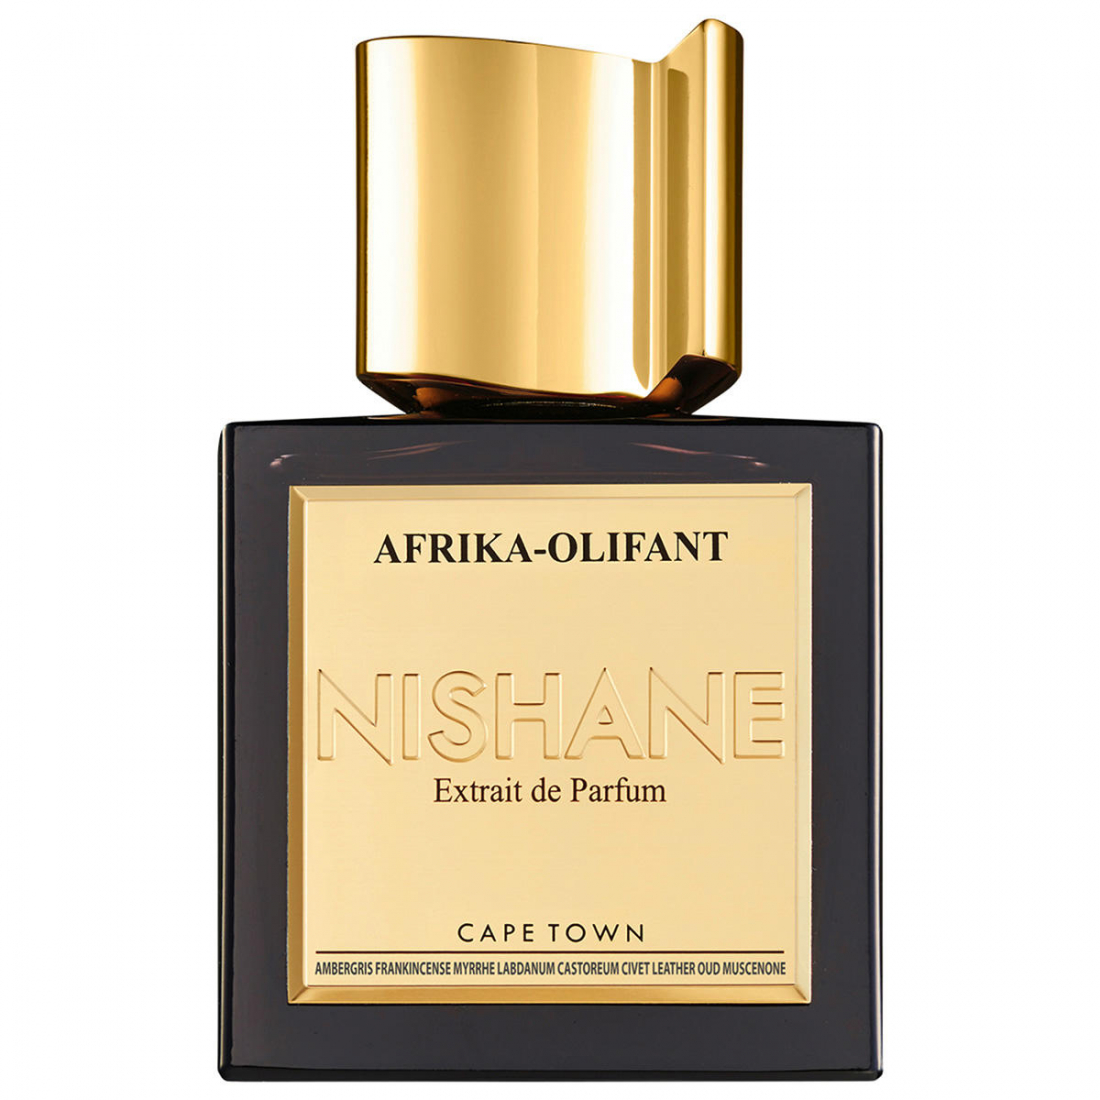 'Afrika-Olifant' Perfume Extract - 50 ml